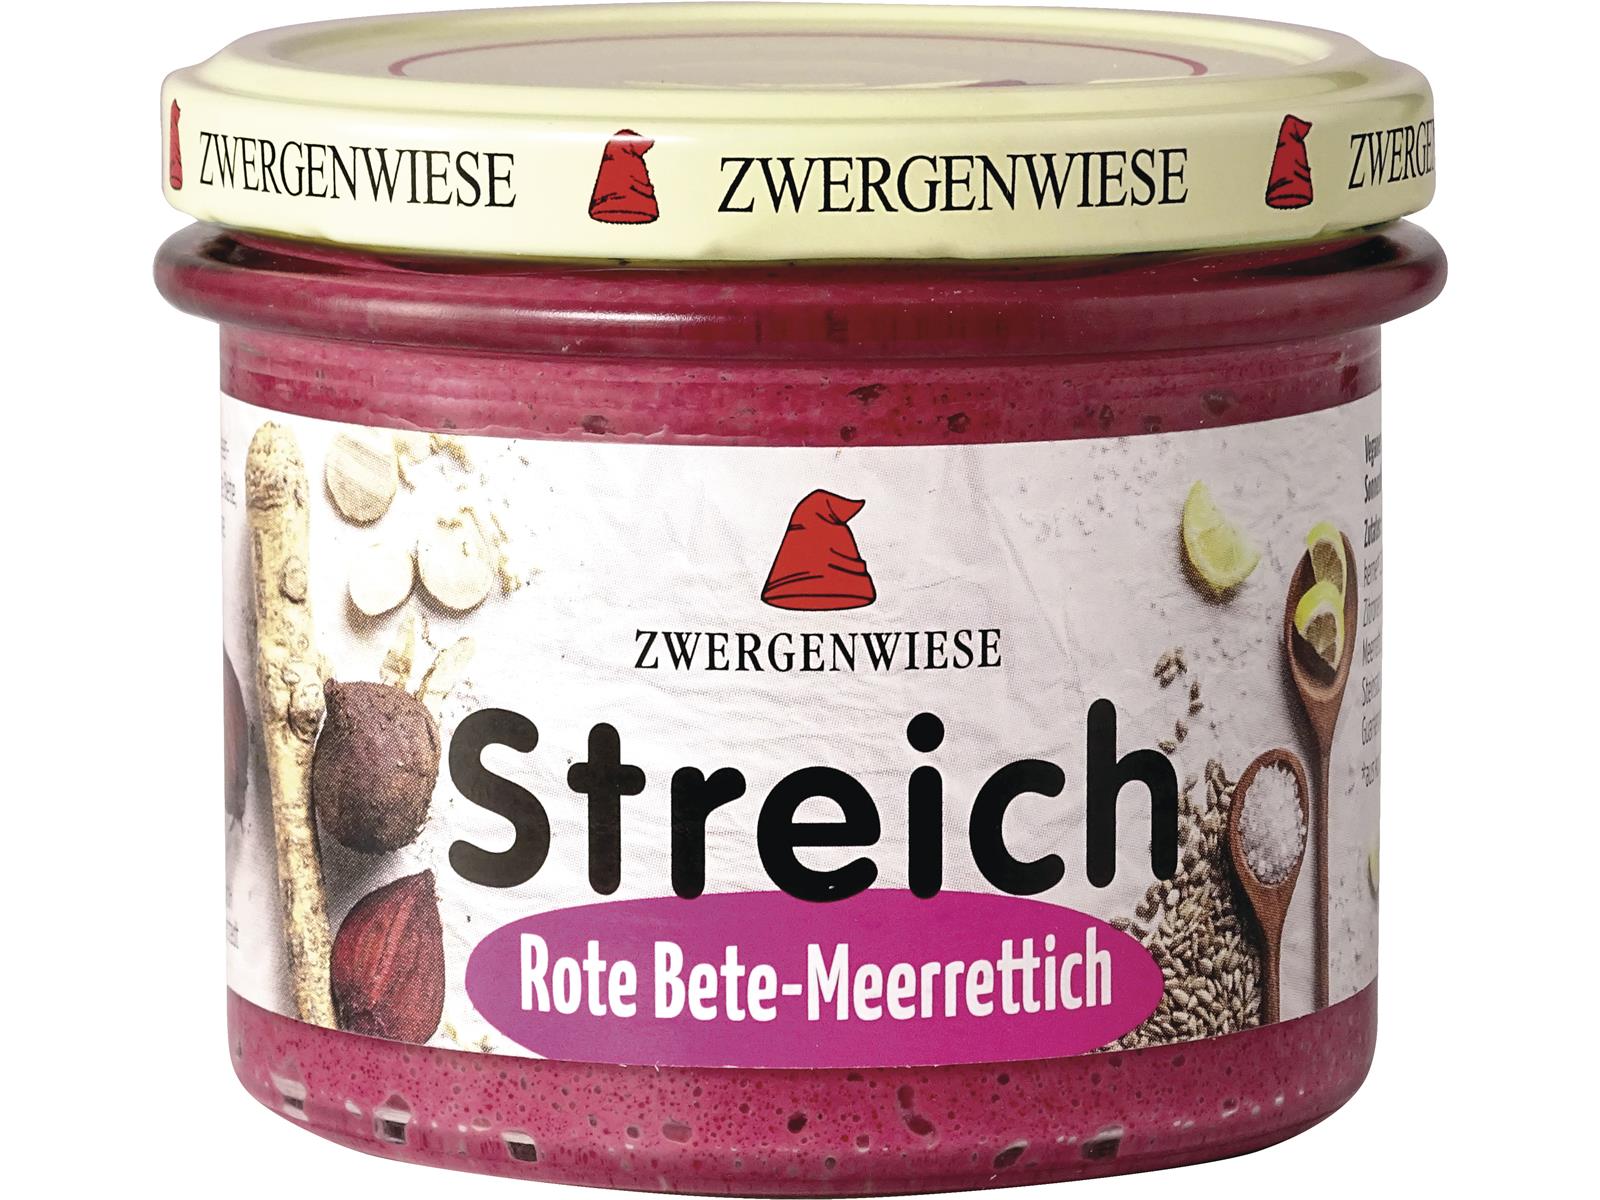 Zwergenwiese Rote-Bete-Meerrettich Streich 180g